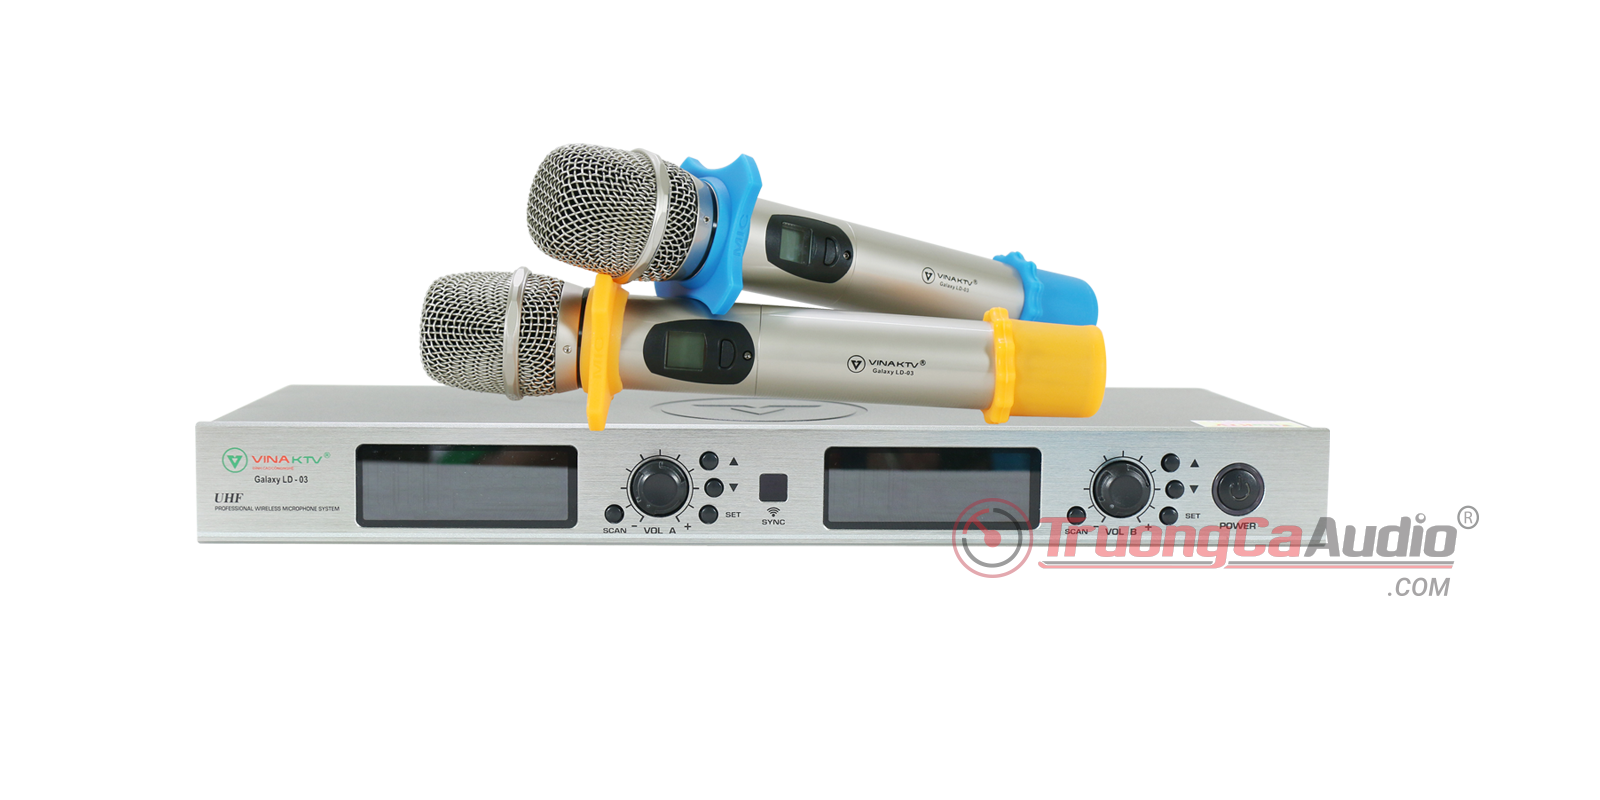 Micro không dây galaxy LD3 là dòng micro chất lượng cao dành cho dàn karaoke gia đình cao cấp a